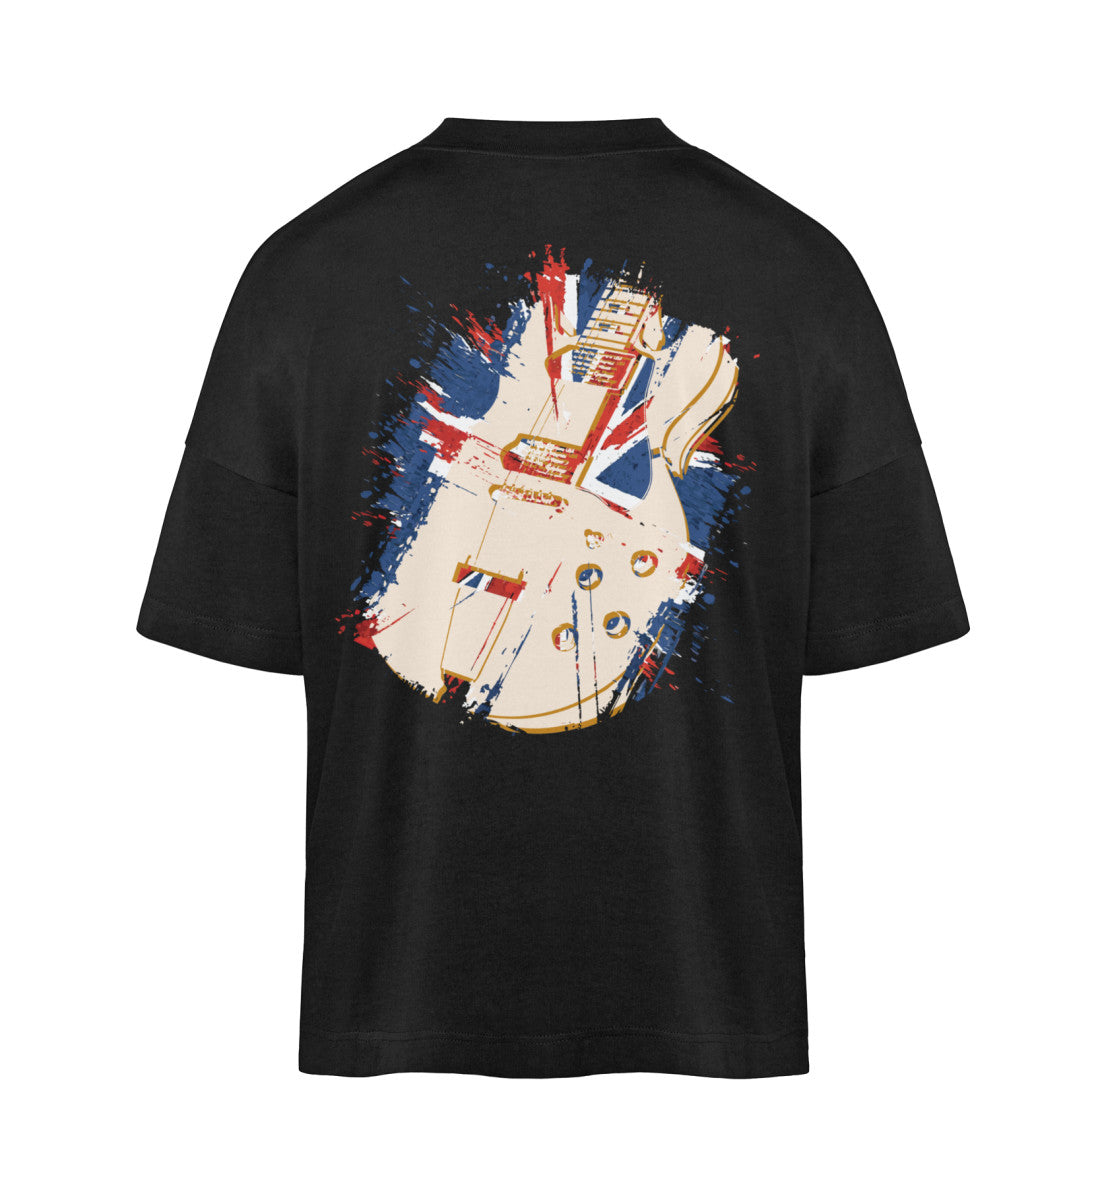 Weißes T-Shirt Unisex Oversize Fit für Frauen und Männer bedruckt mit dem Design der Roger Rockawoo Kollektion guitar britpop tragedy